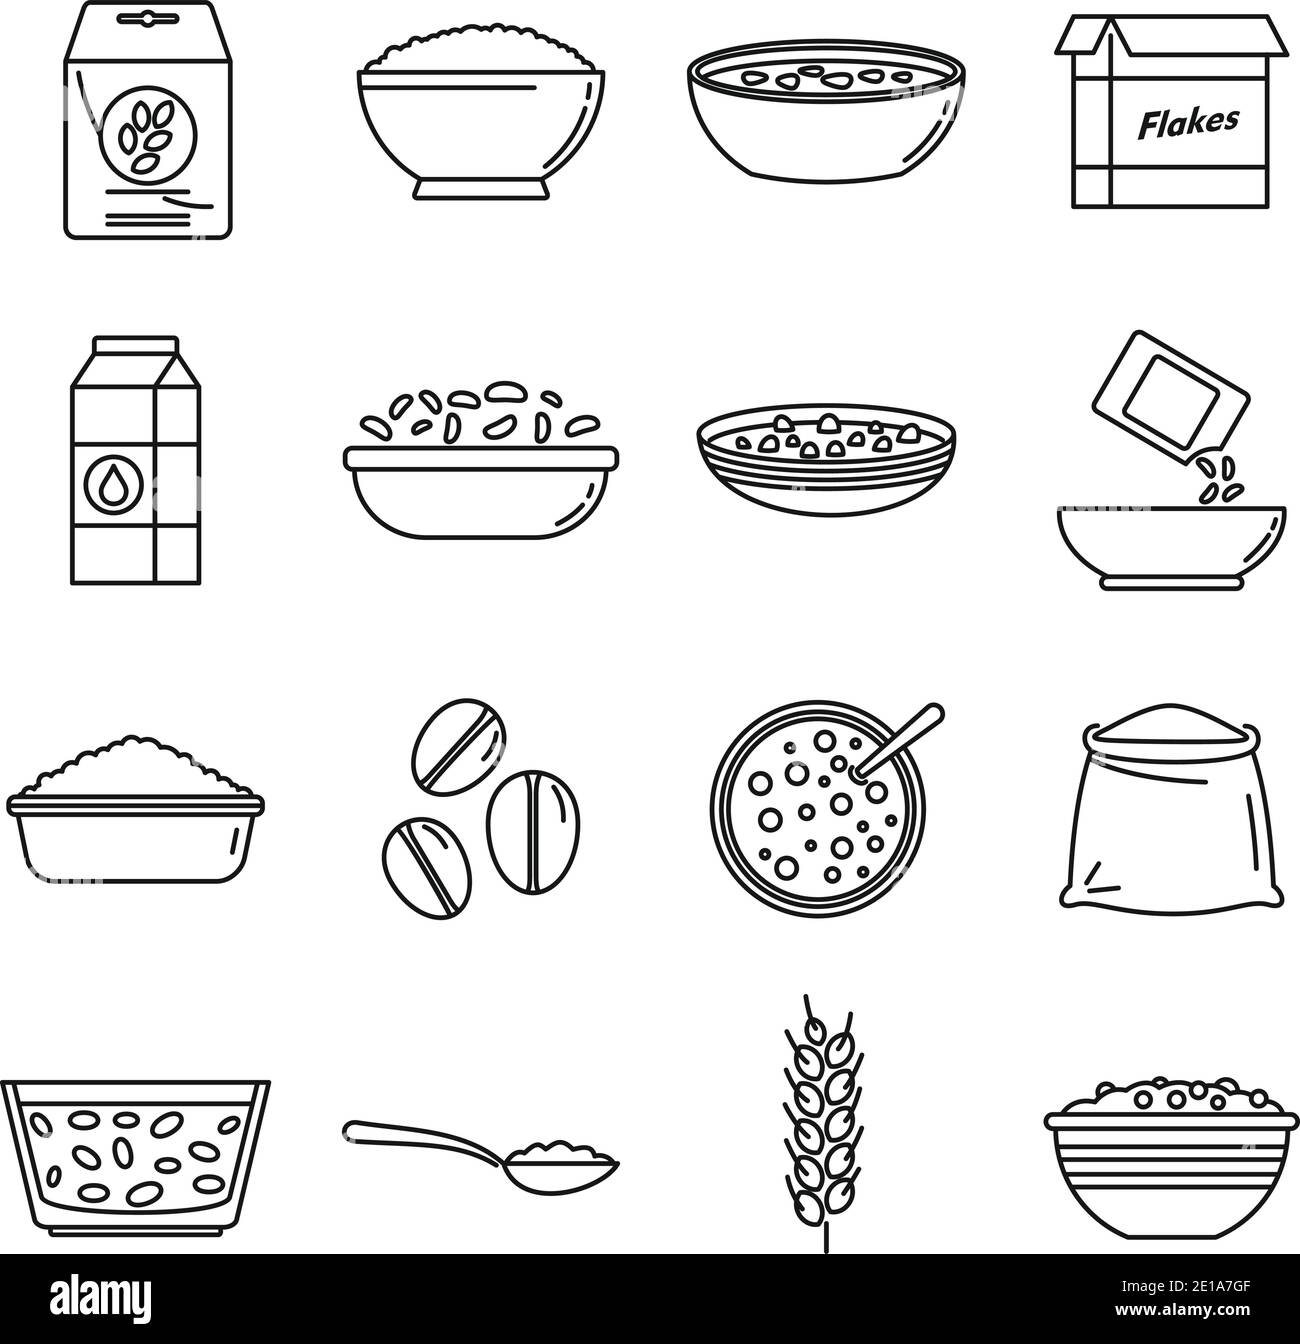 Frühstück Müsli Flakes Symbole gesetzt, skizzieren Stil Stock Vektor